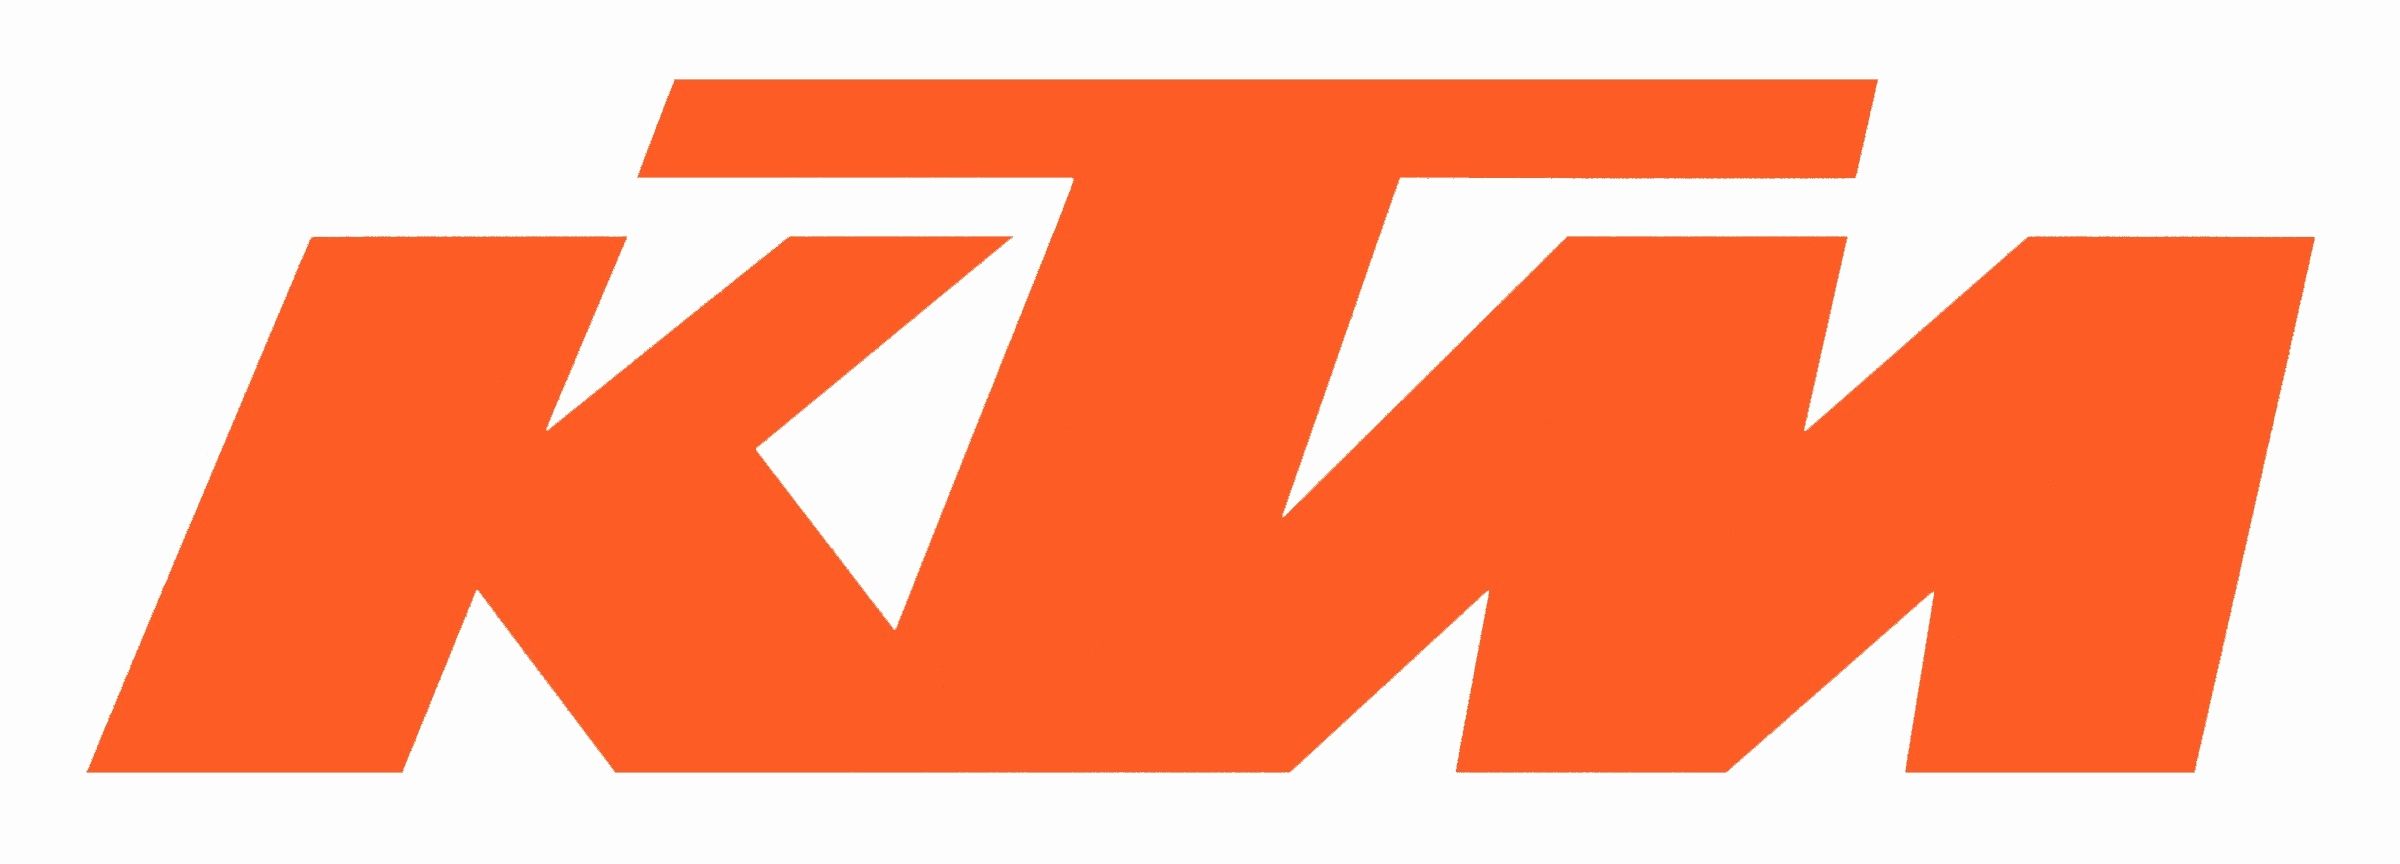 Ktm Logo Elegant Ktm Logo Wallpaper HD 70 Image This Year